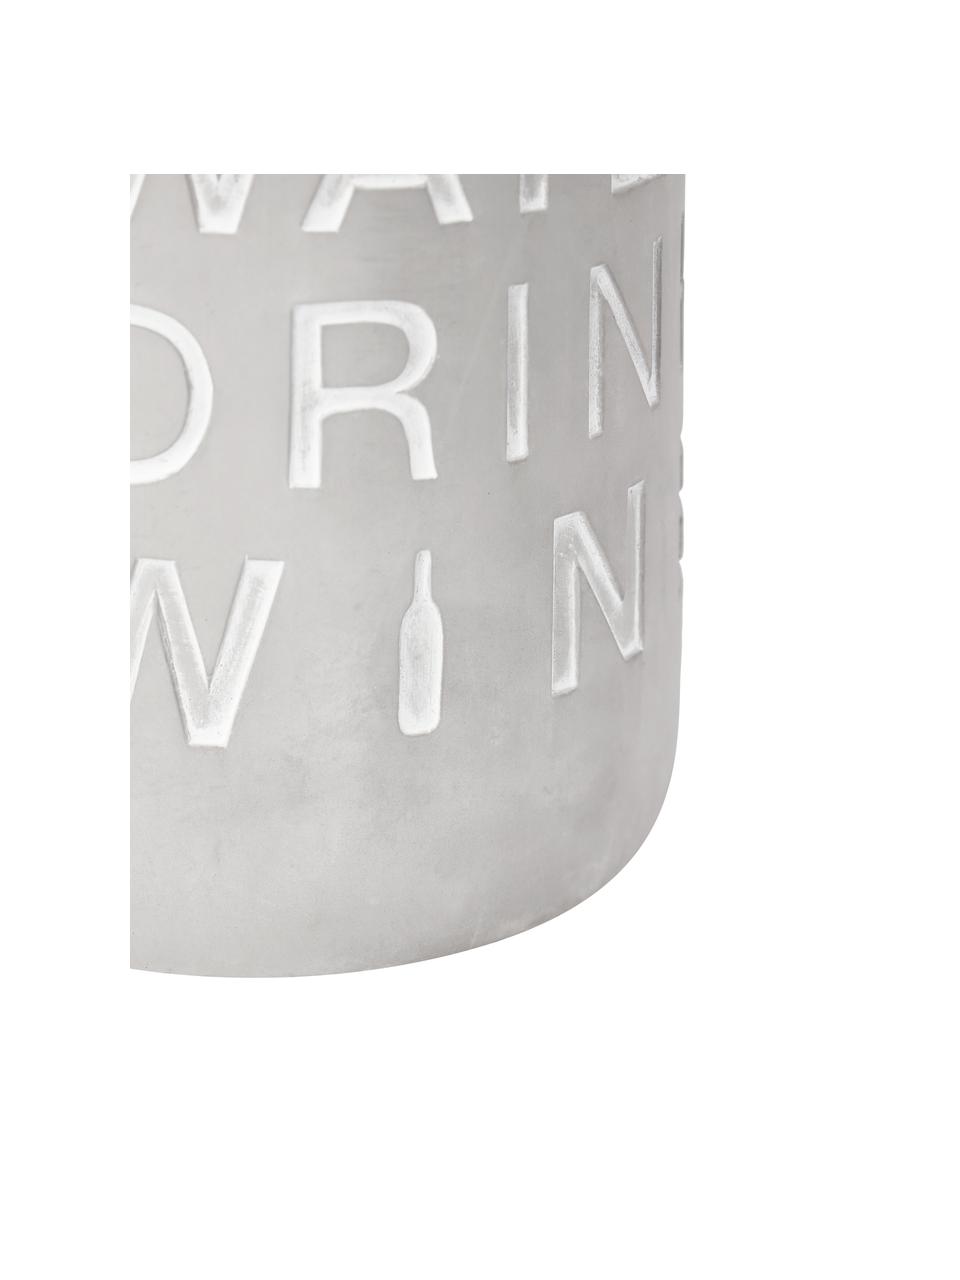 Flaschenkühler Drink Wine in Grau, Beton, Grau, Weiß, Ø 14 x H 21 cm